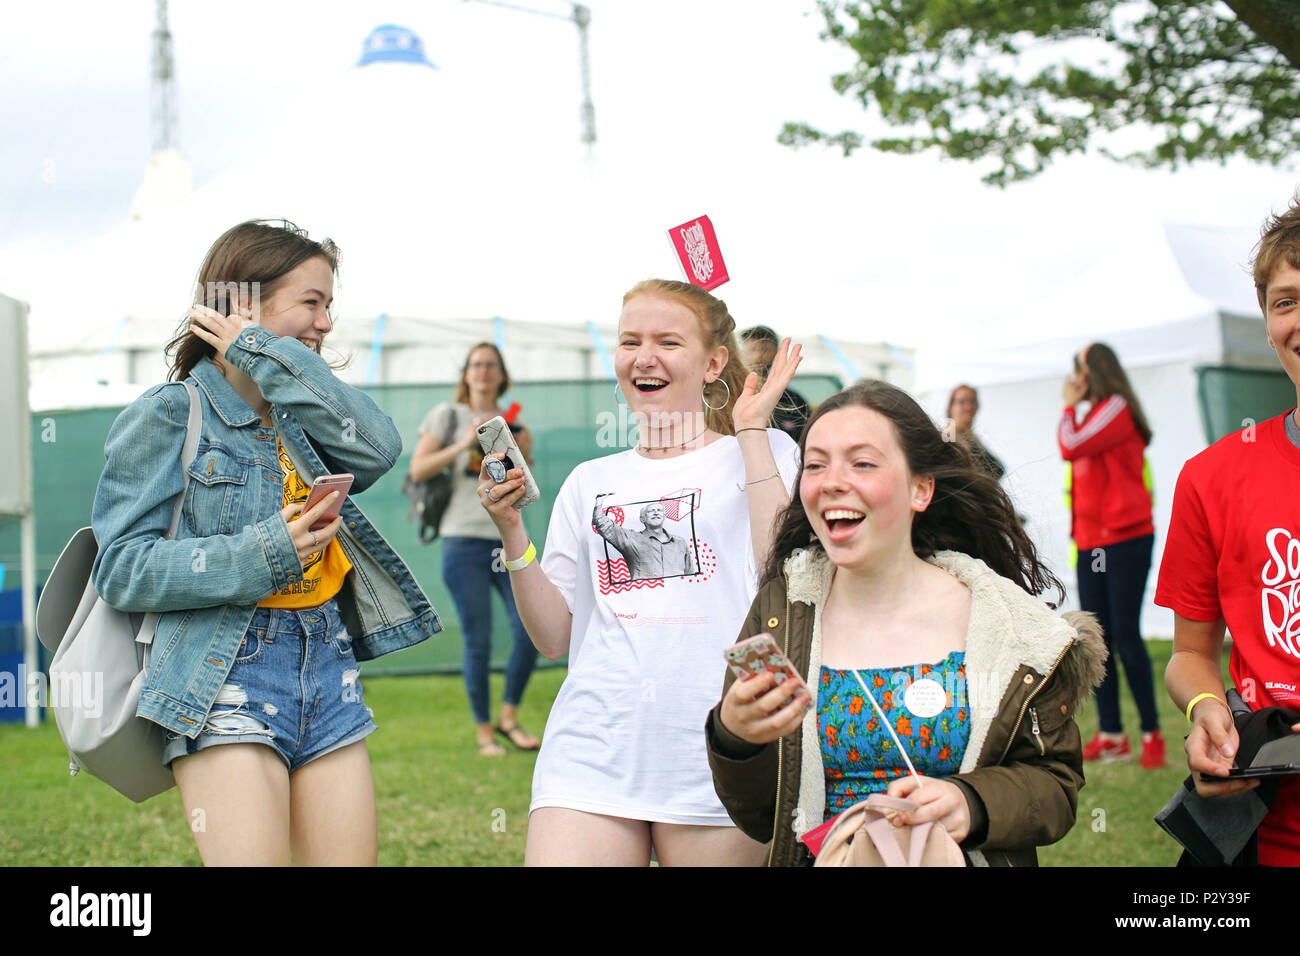 Ein junges Mädchen mit einem Jeremy Corbyn t-shirt lacht mit Freunden während der Arbeit Live Event an der White Hart Lane Recreation Ground, nördlich von London. Stockfoto